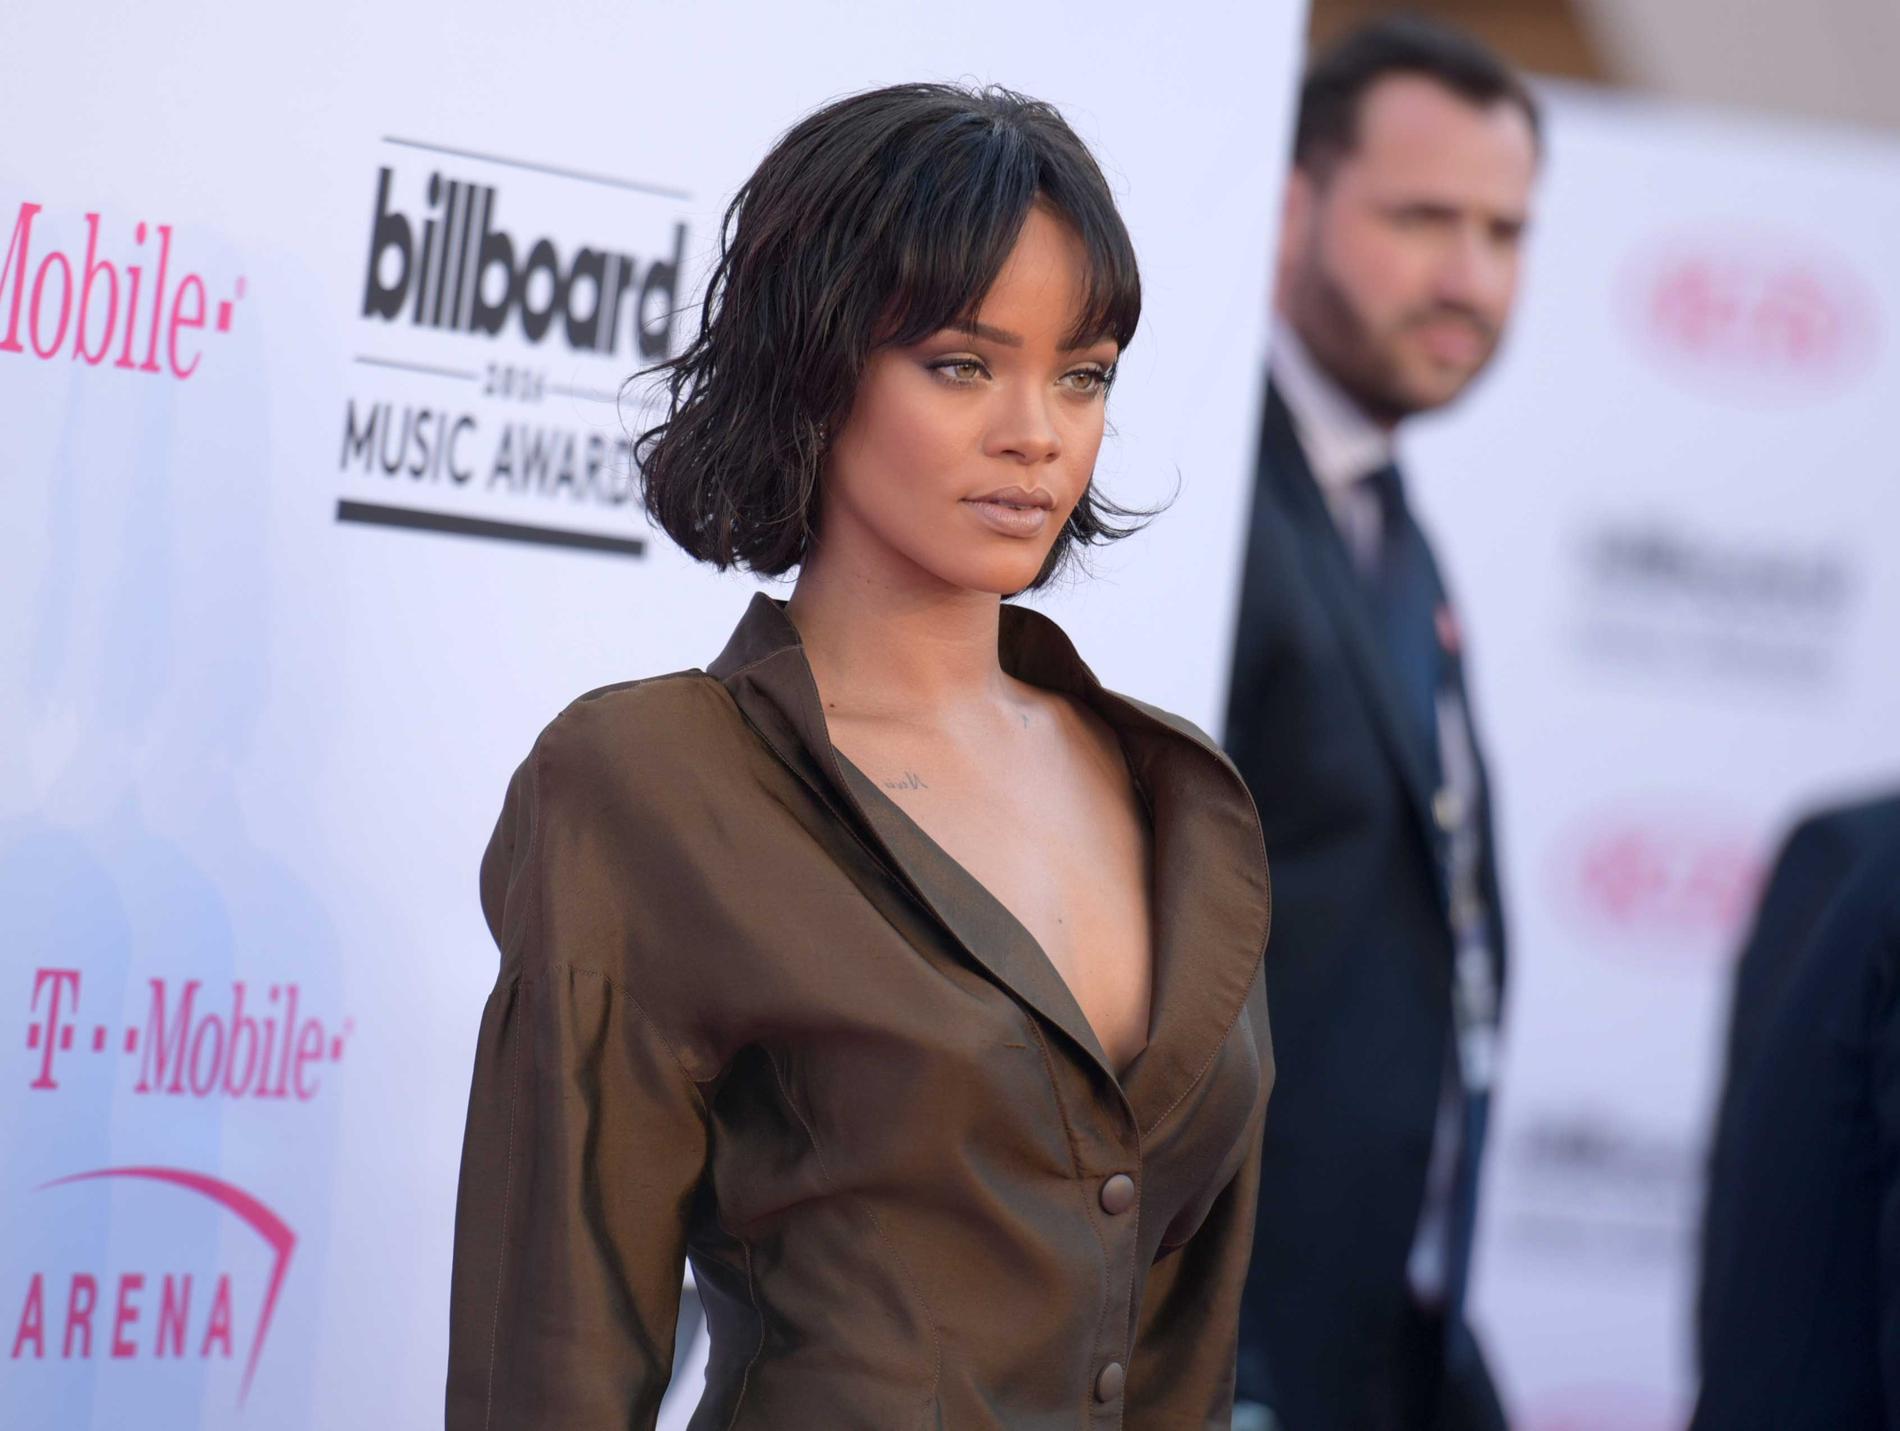 Enligt nätsajten Deadline är det ytterst nära att Rihanna axlar en av rollerna i "Ocean's eight".